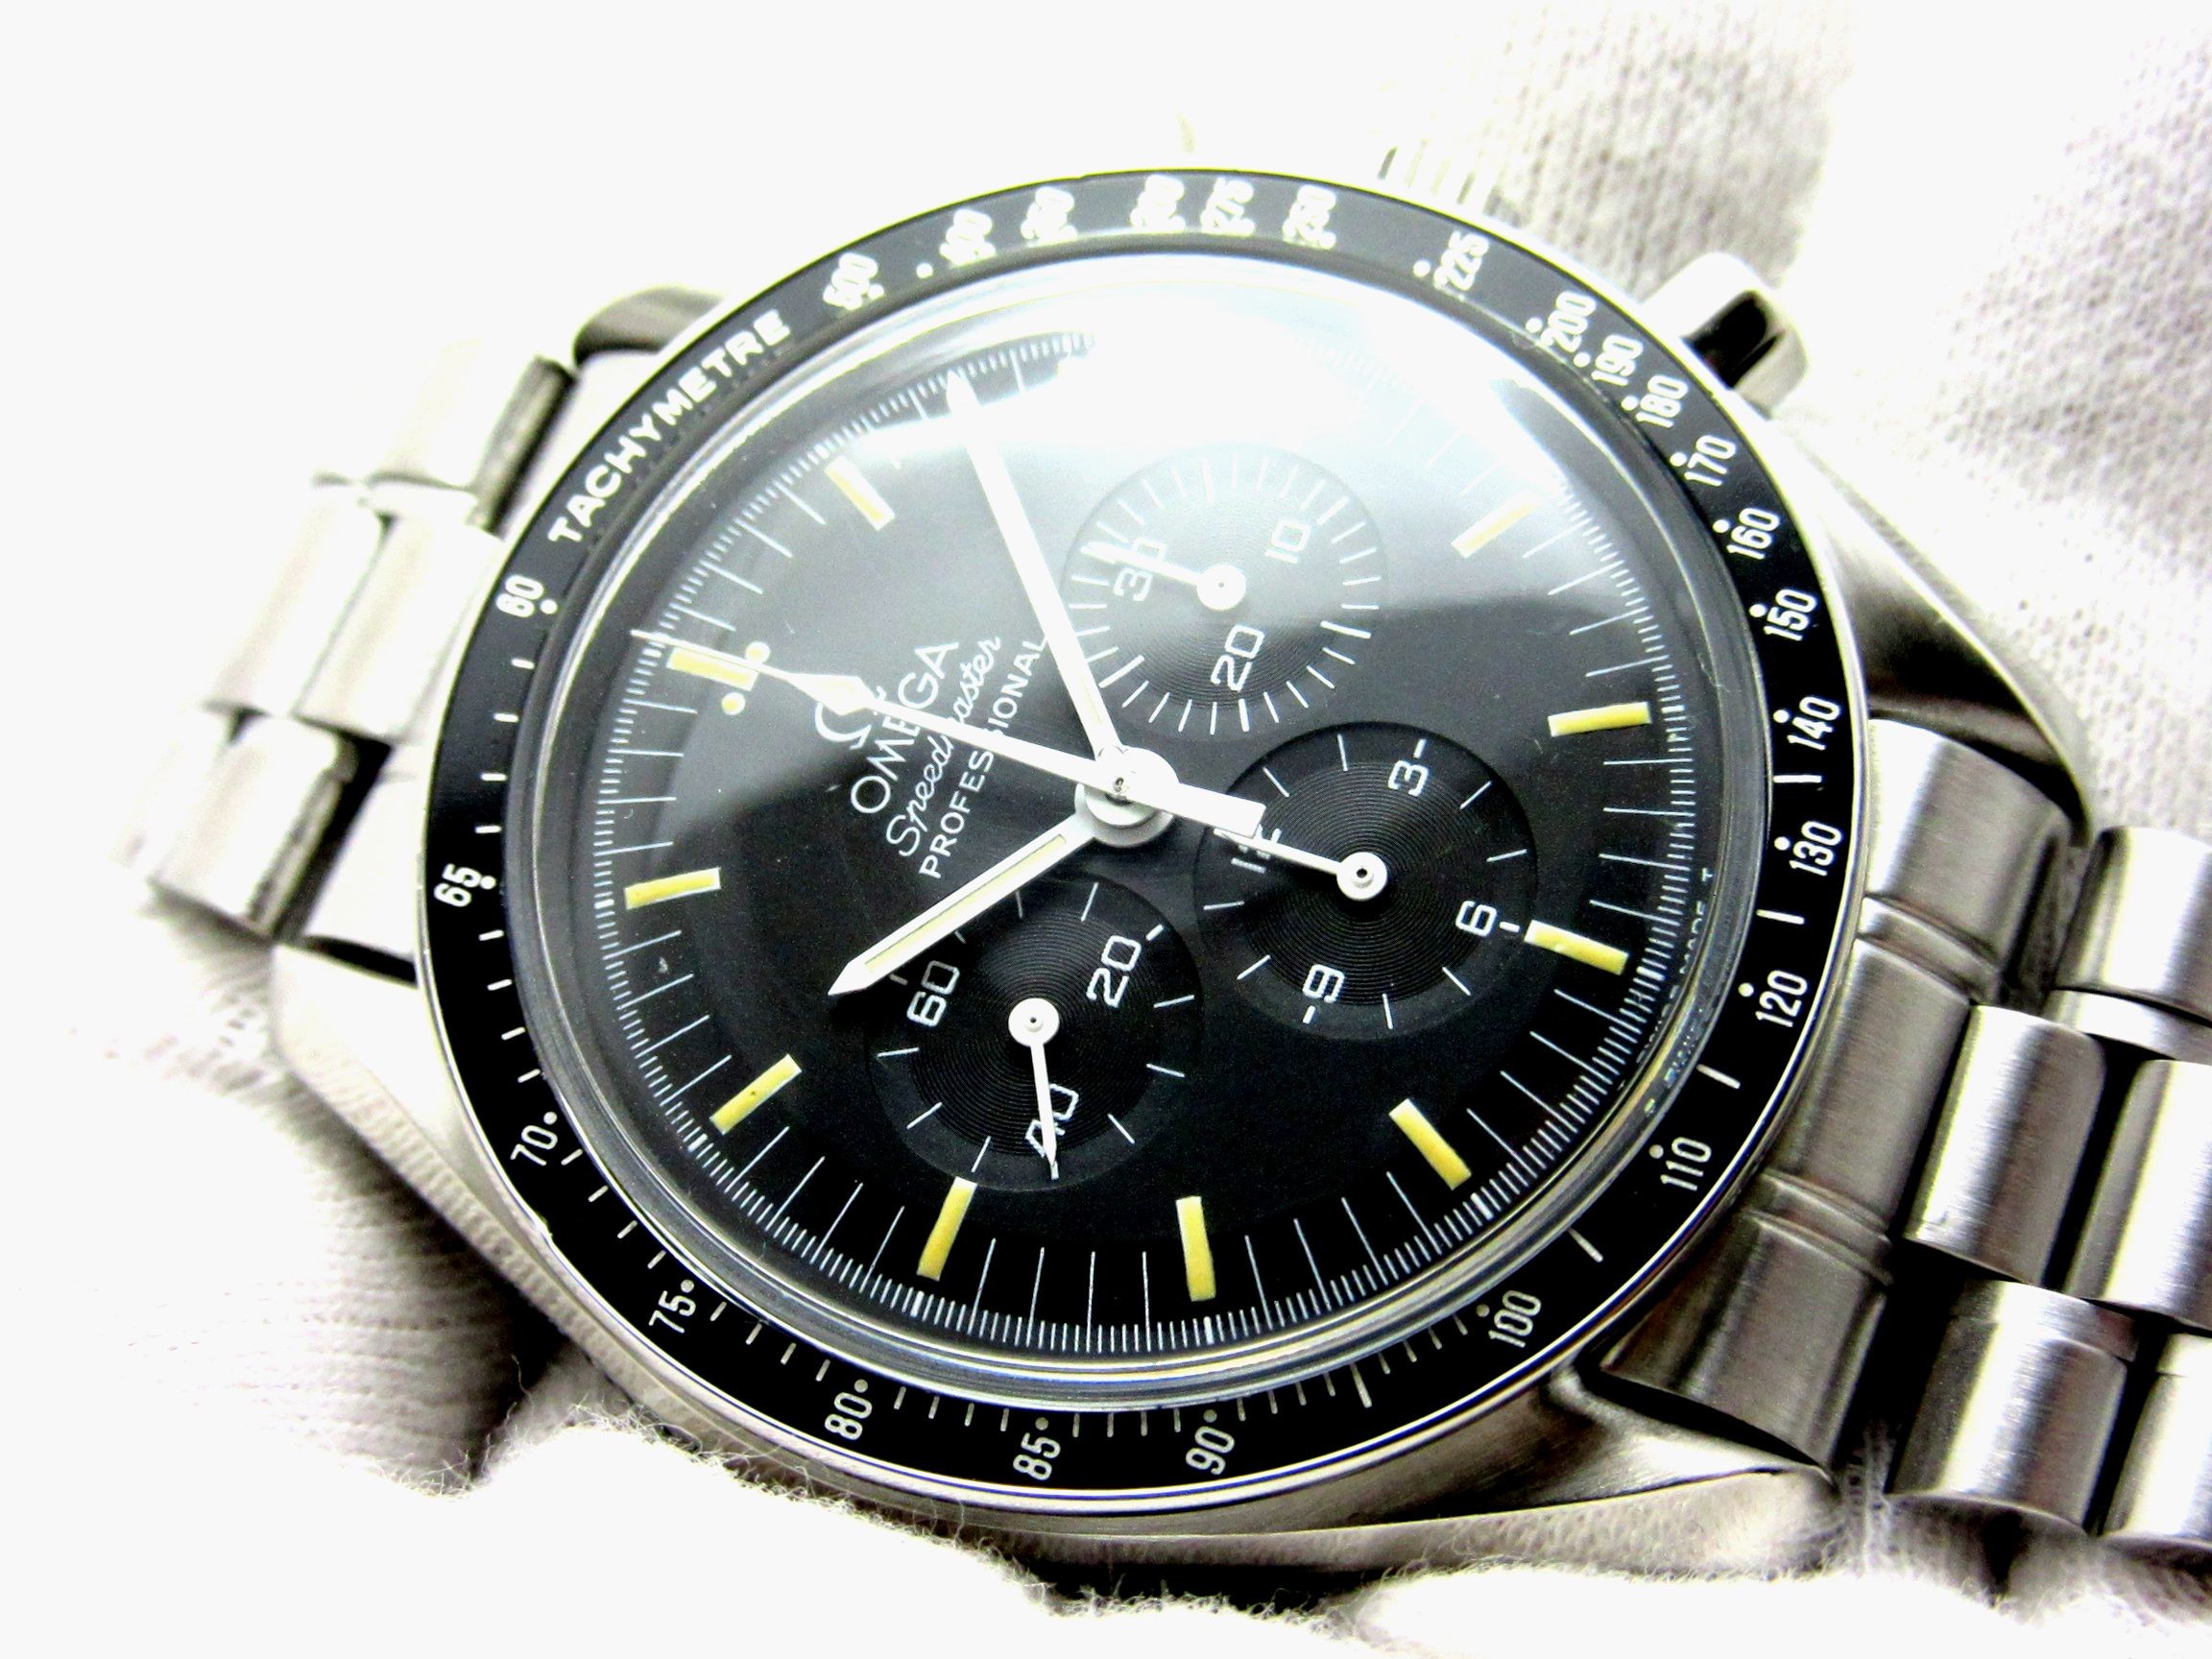 オメガ OMEGA スピードマスター プロフェッショナル 3591 50 アポロ11号 25周年記念 メンズ 腕時計 手巻き Speedmaster VLP 90175813